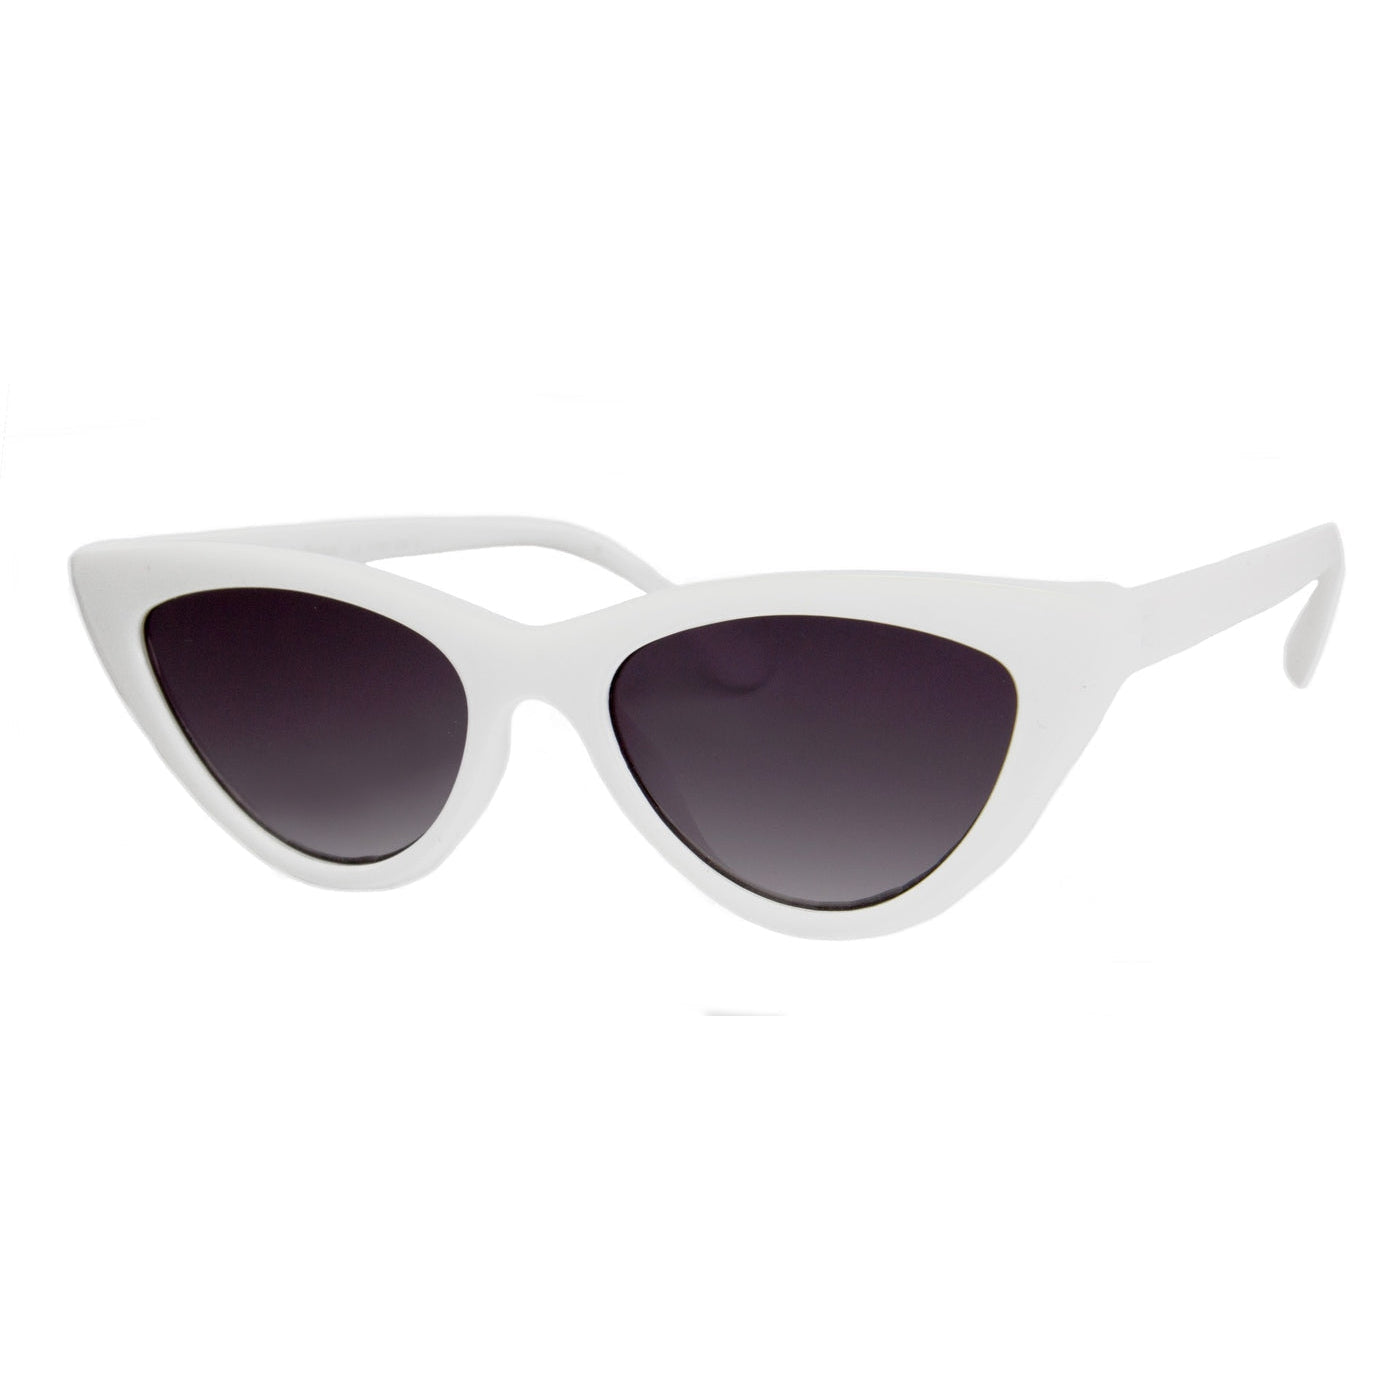 Naughty Sunglasses - White